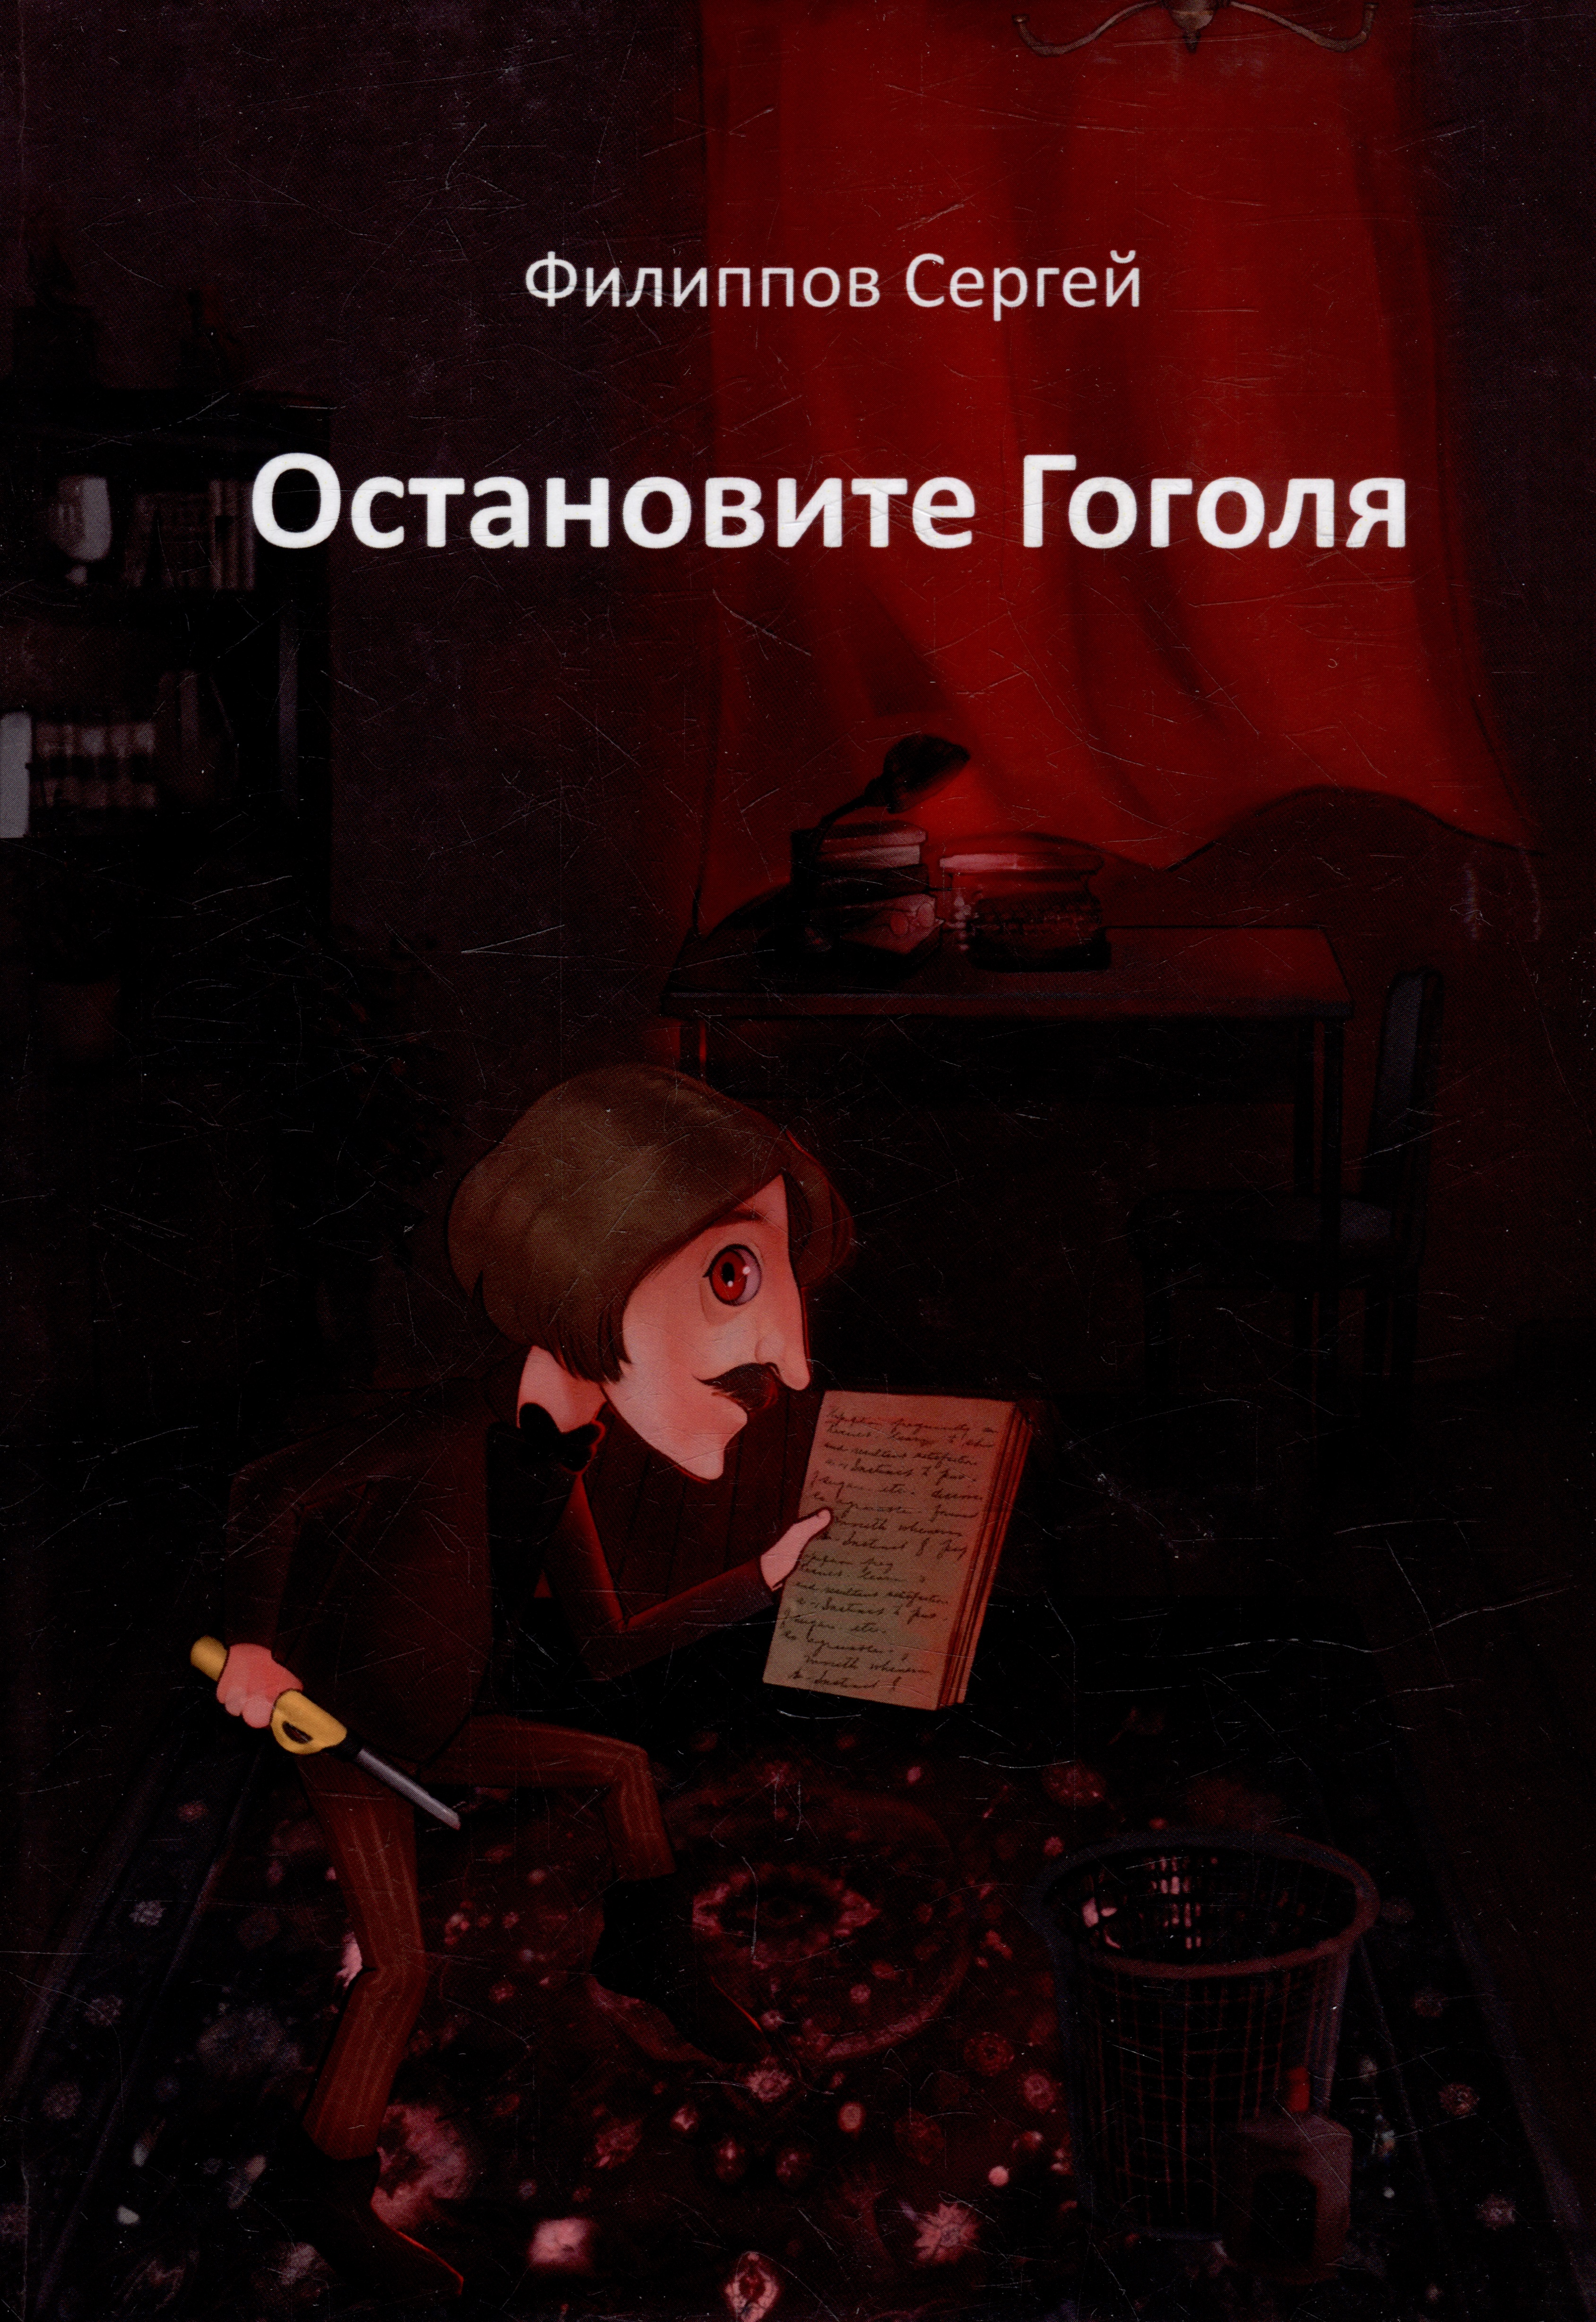 Филиппов Сергей - Остановите Гоголя